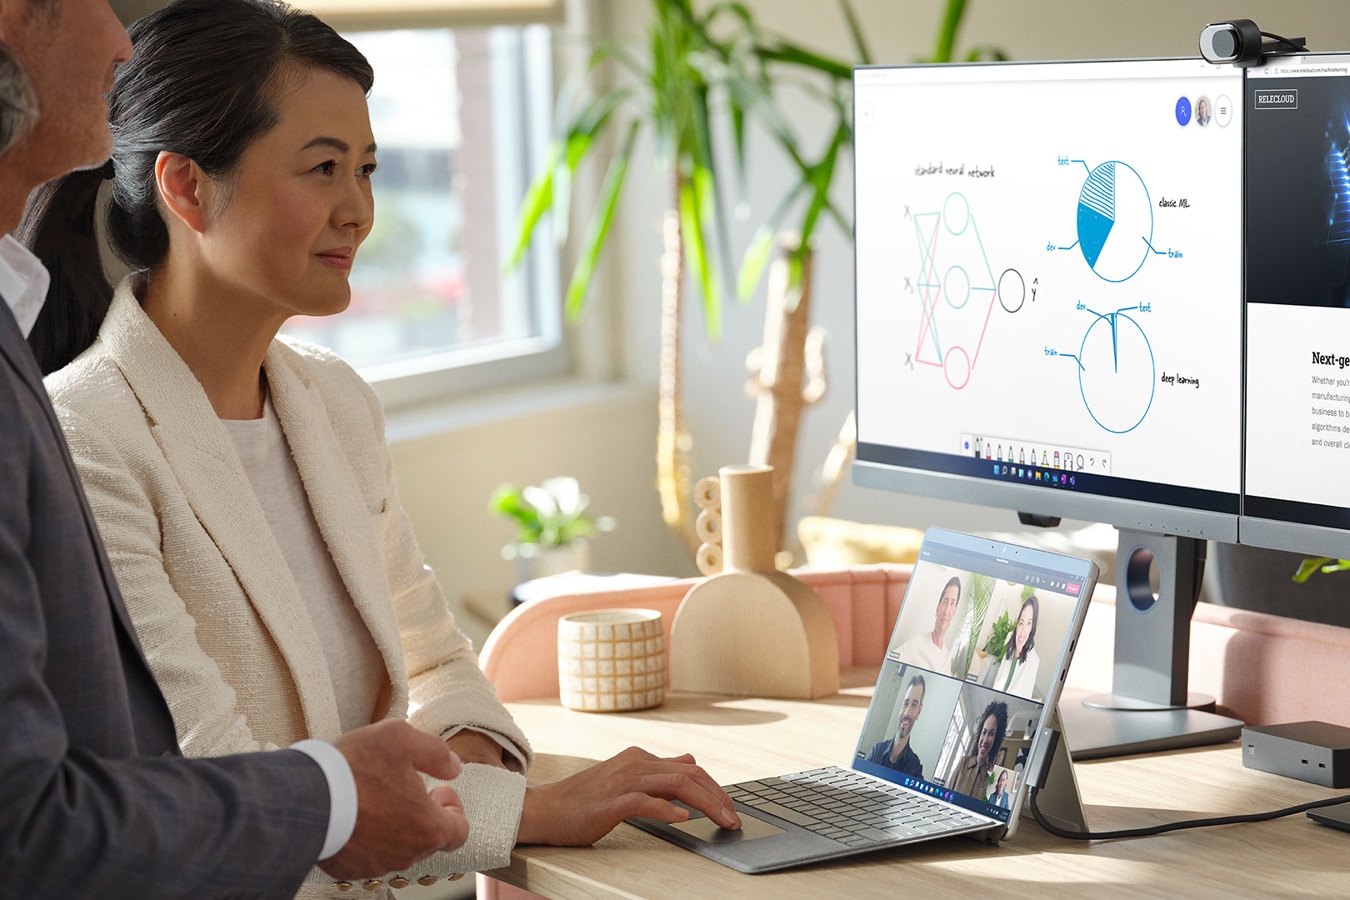 يستخدم رجل وامرأة في مكتب جهازي Surface الخاصين بهما والمتصلين بشاشتين خارجيتين لإجراء اجتماع عبر Microsoft Teams